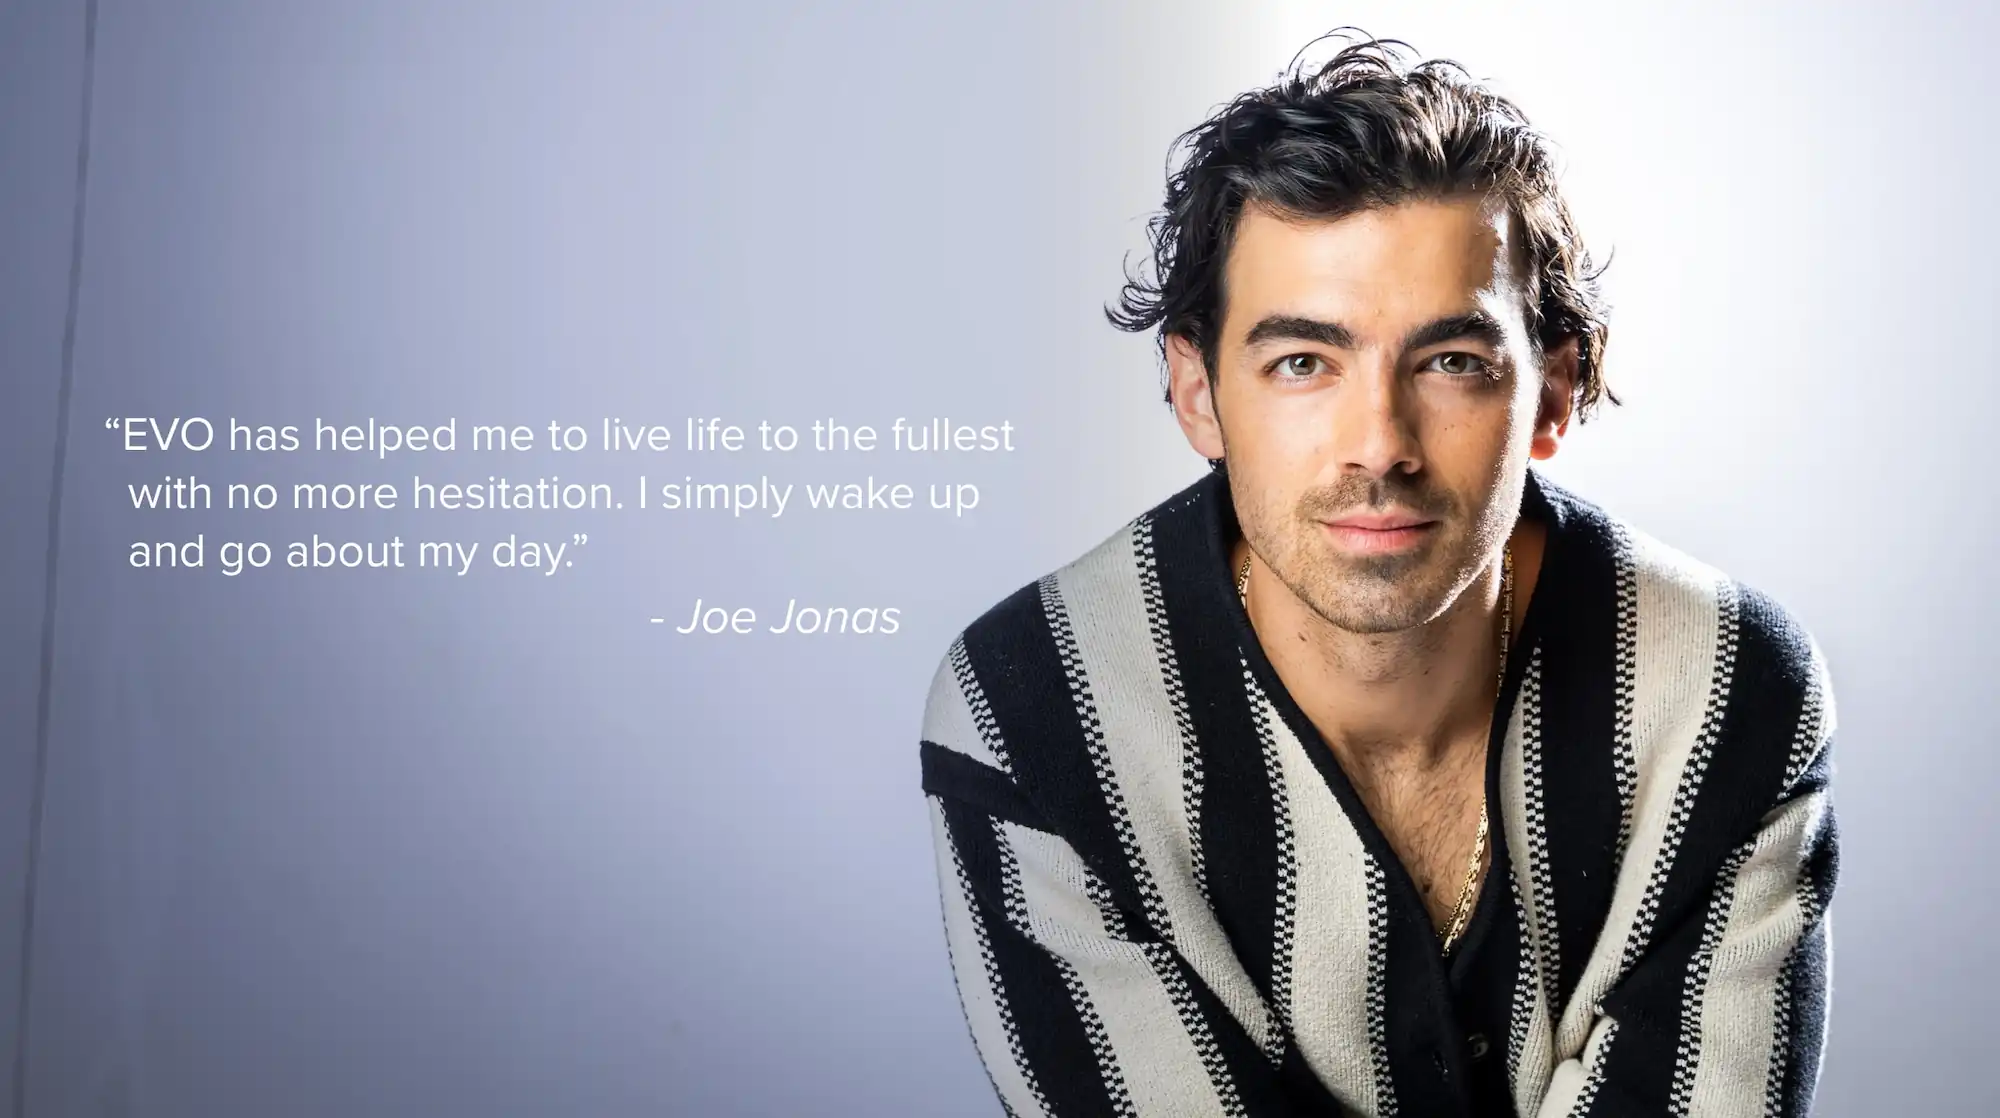 Joe Jonas posing with a quote regarding EVO